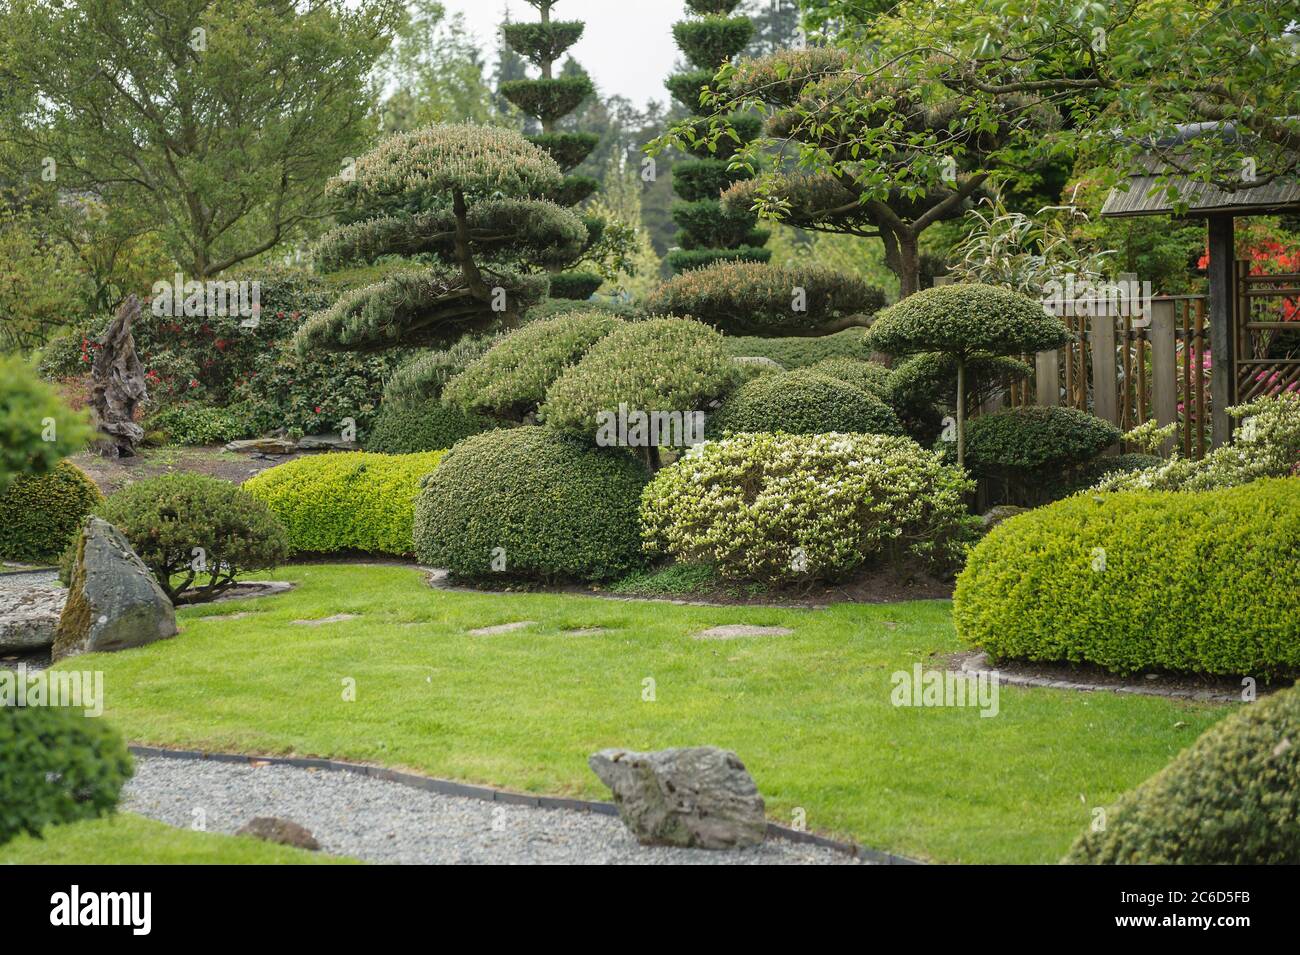 Japanischer Garten, Krummholz-Kiefer , Pinus mugo, Japanese garden, dwarf pine pine, Pinus mugo Stock Photo